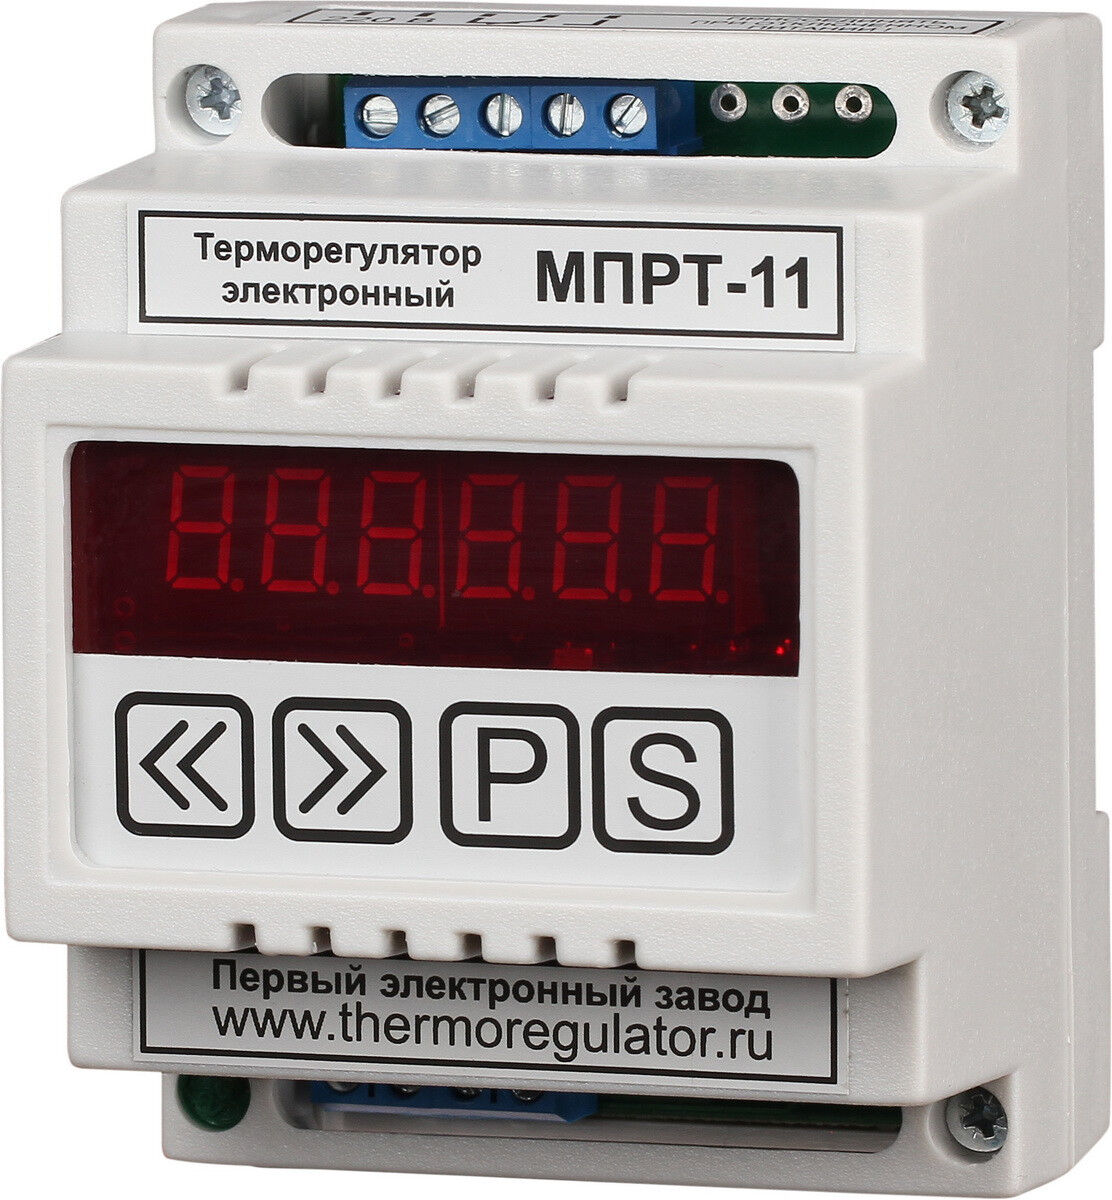 Терморегулятор МПРТ-11 без датчиков цифровое управление DIN ПЭЛЗ